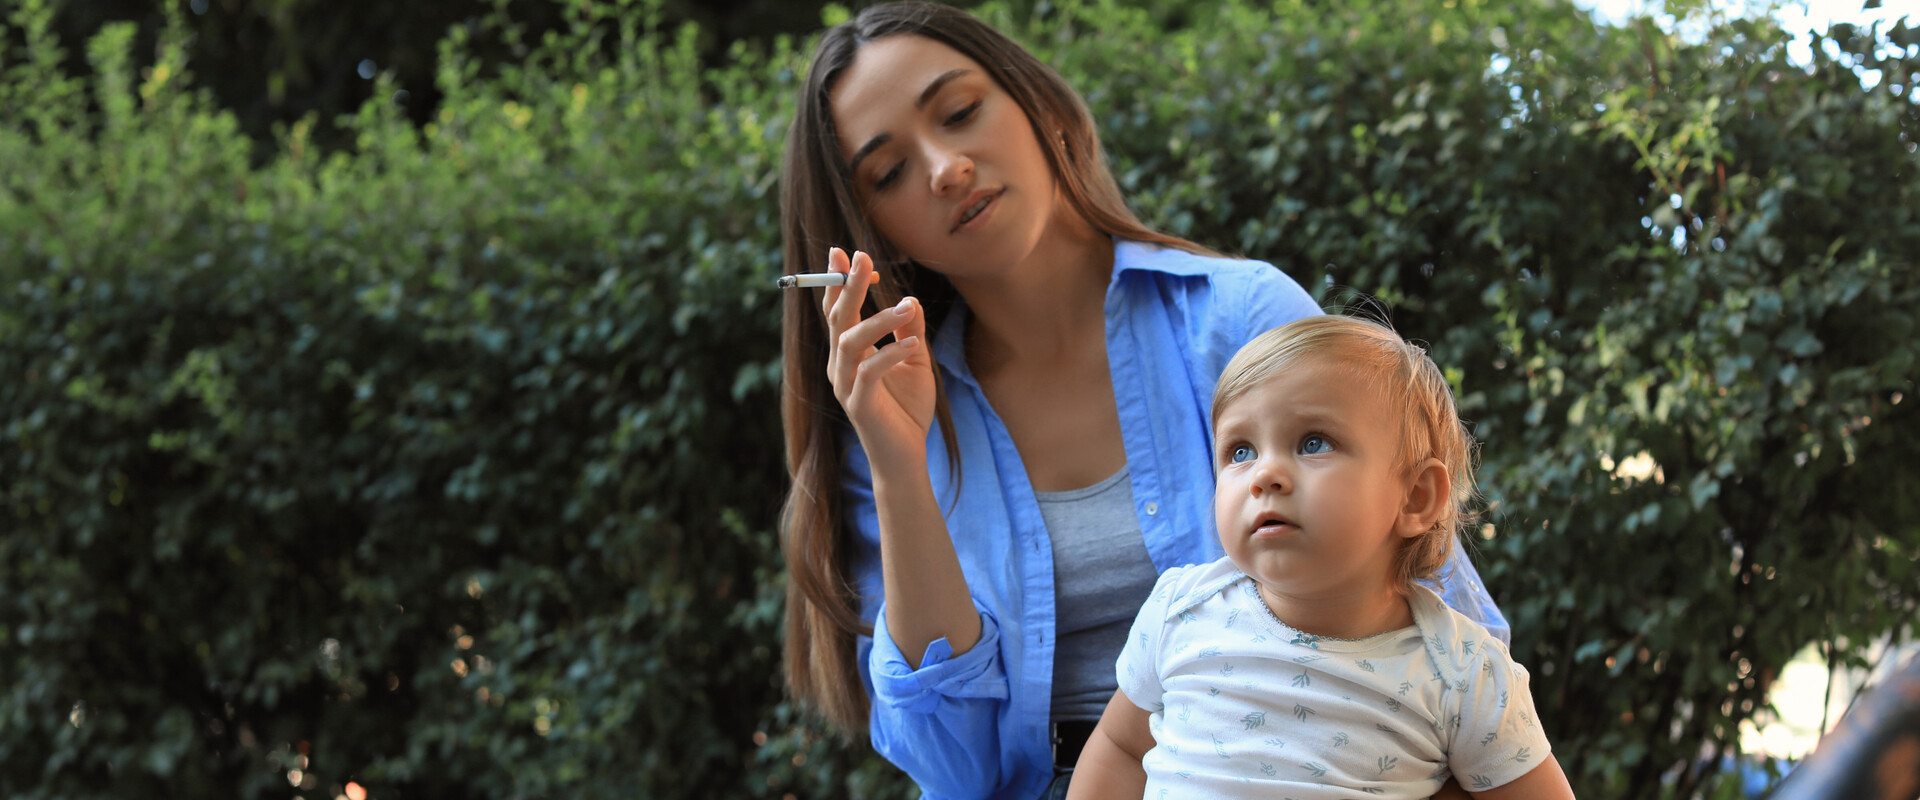 אימא מעשנת, מטפלת מעשנת (צילום: 123rf)